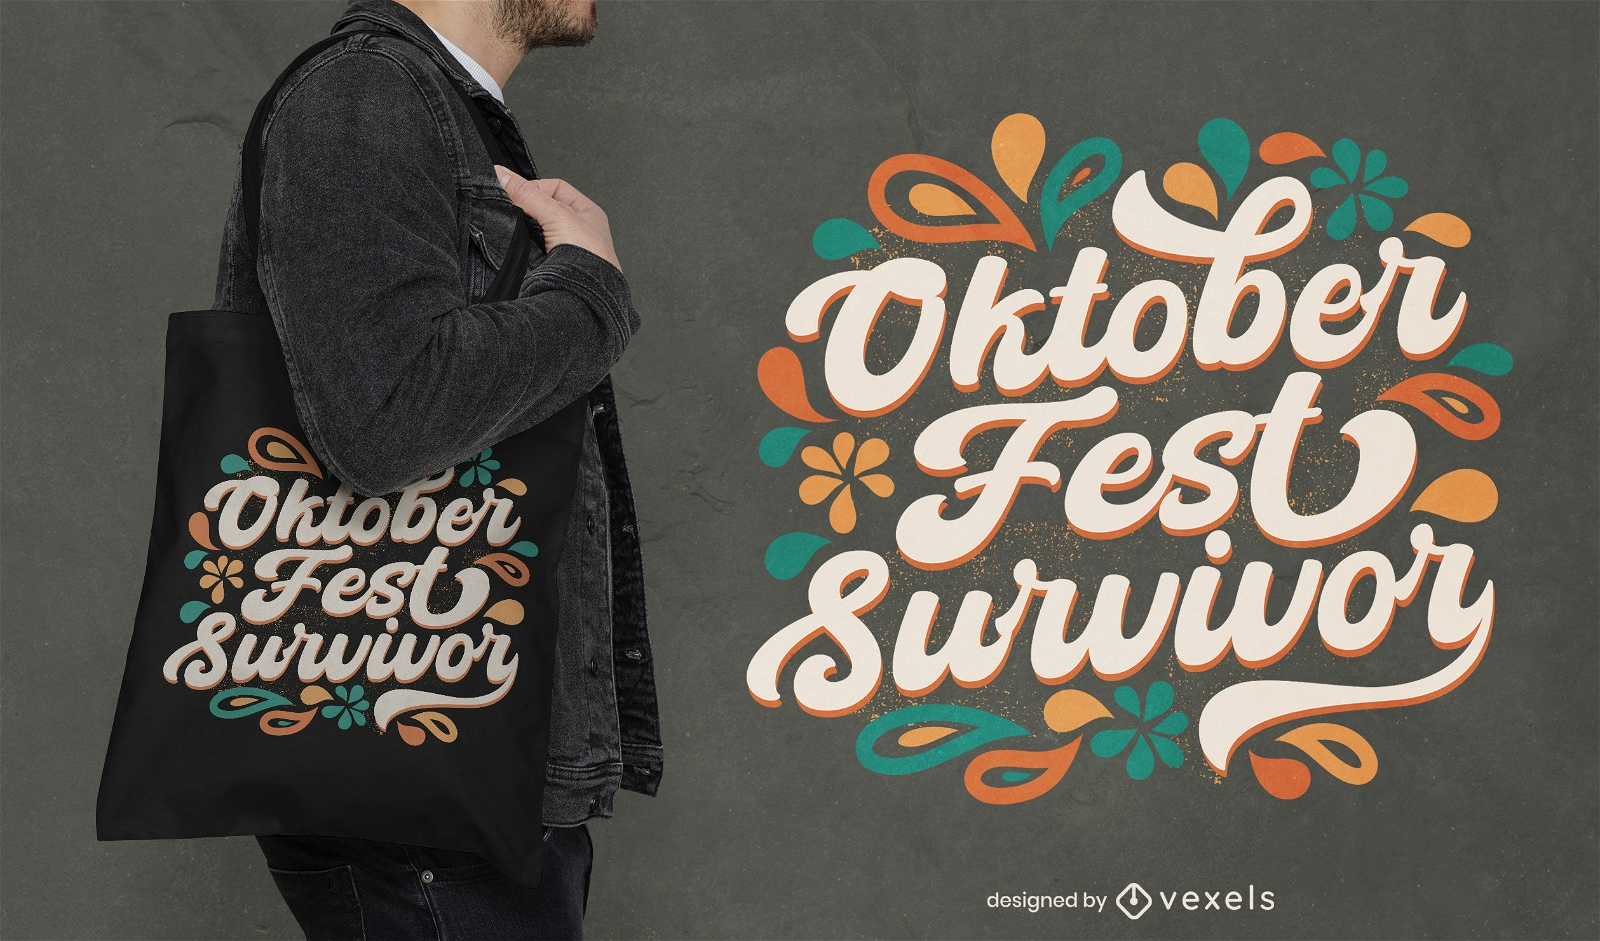 Oktoberfest survivor lettering tote bag design